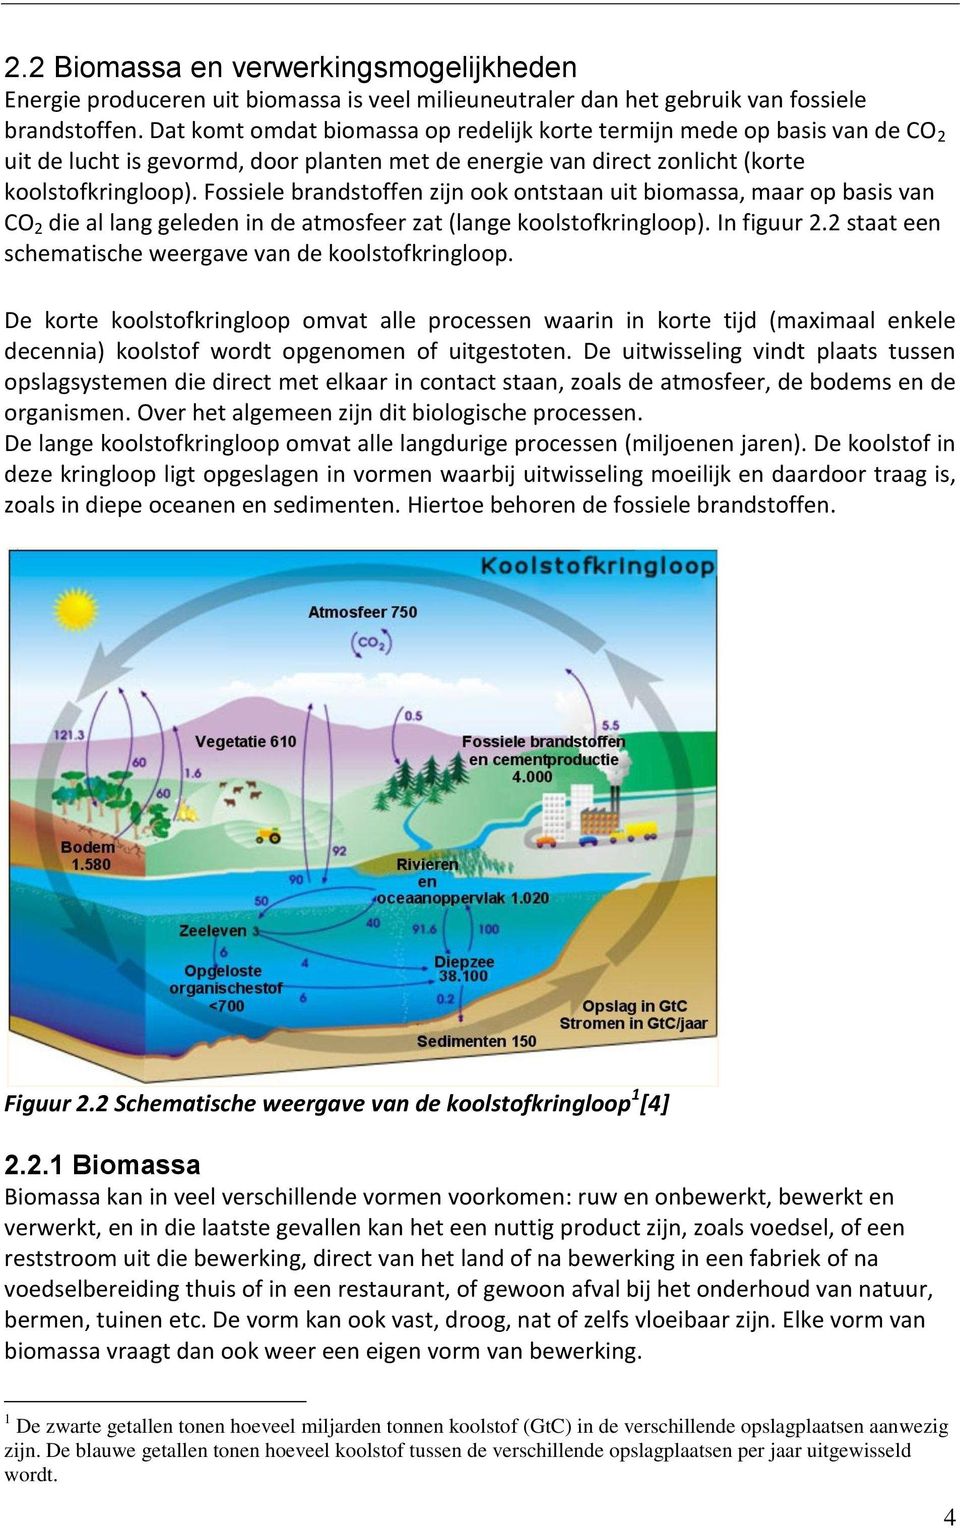 Fossiele brandstoffen zijn ook ontstaan uit biomassa, maar op basis van CO 2 die al lang geleden in de atmosfeer zat (lange koolstofkringloop). In figuur 2.